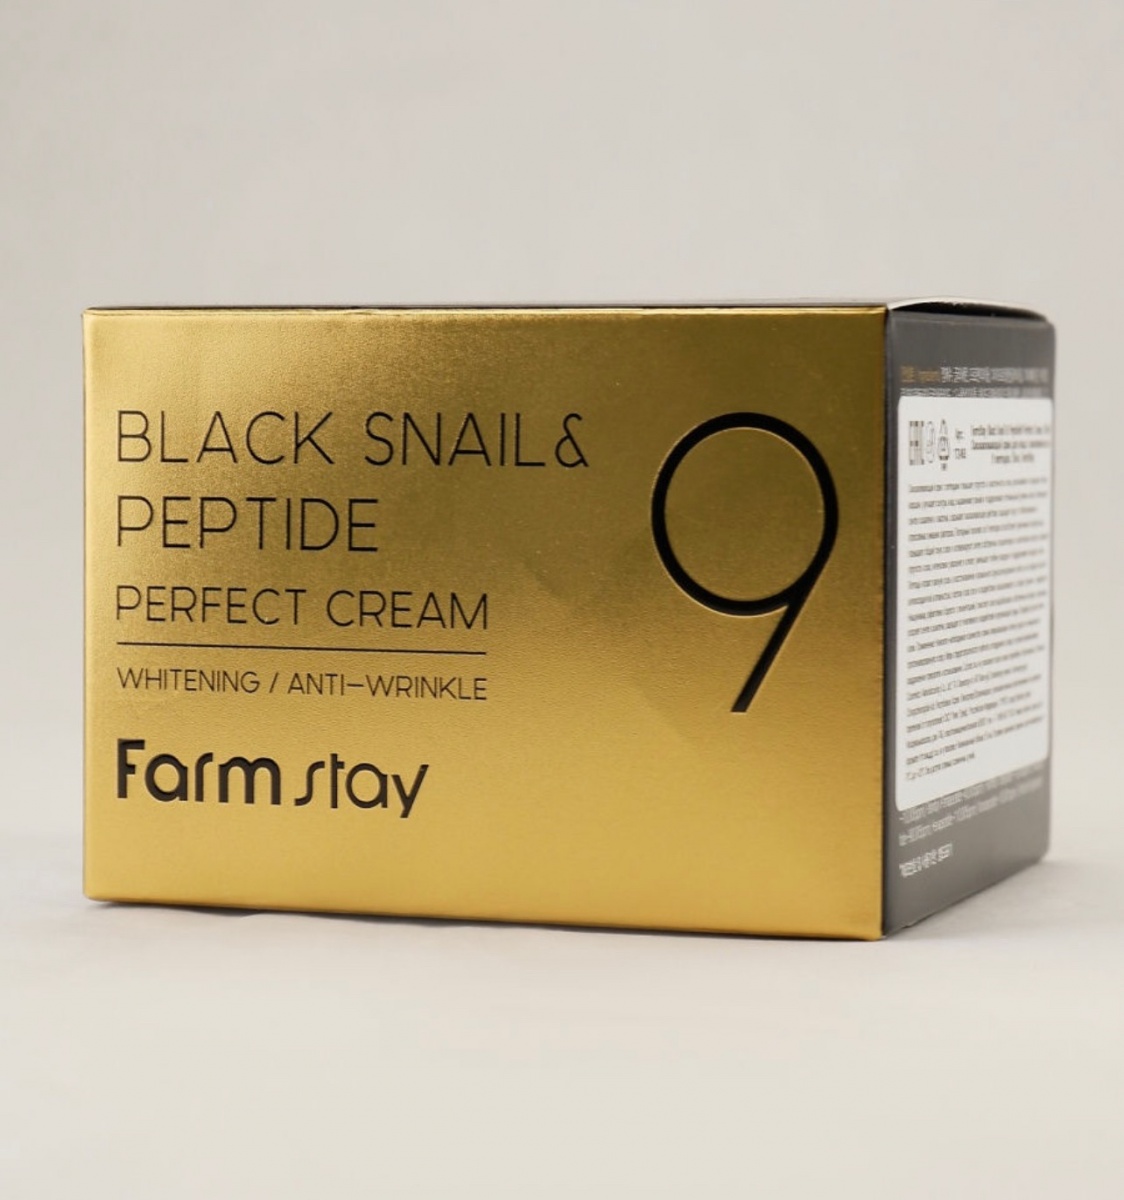 Perfect крем купить. Black Snail Peptide 9 perfect Cream. Farm stay Black Snail & Peptide 9 perfect Cream. Farm stay Black Snail & peptide9 perfect Cream 55ml.. Крем для лица с комплексом из 9 пептидов Farmstay Black Snail & peptide9 perfect Cream 55 мл.